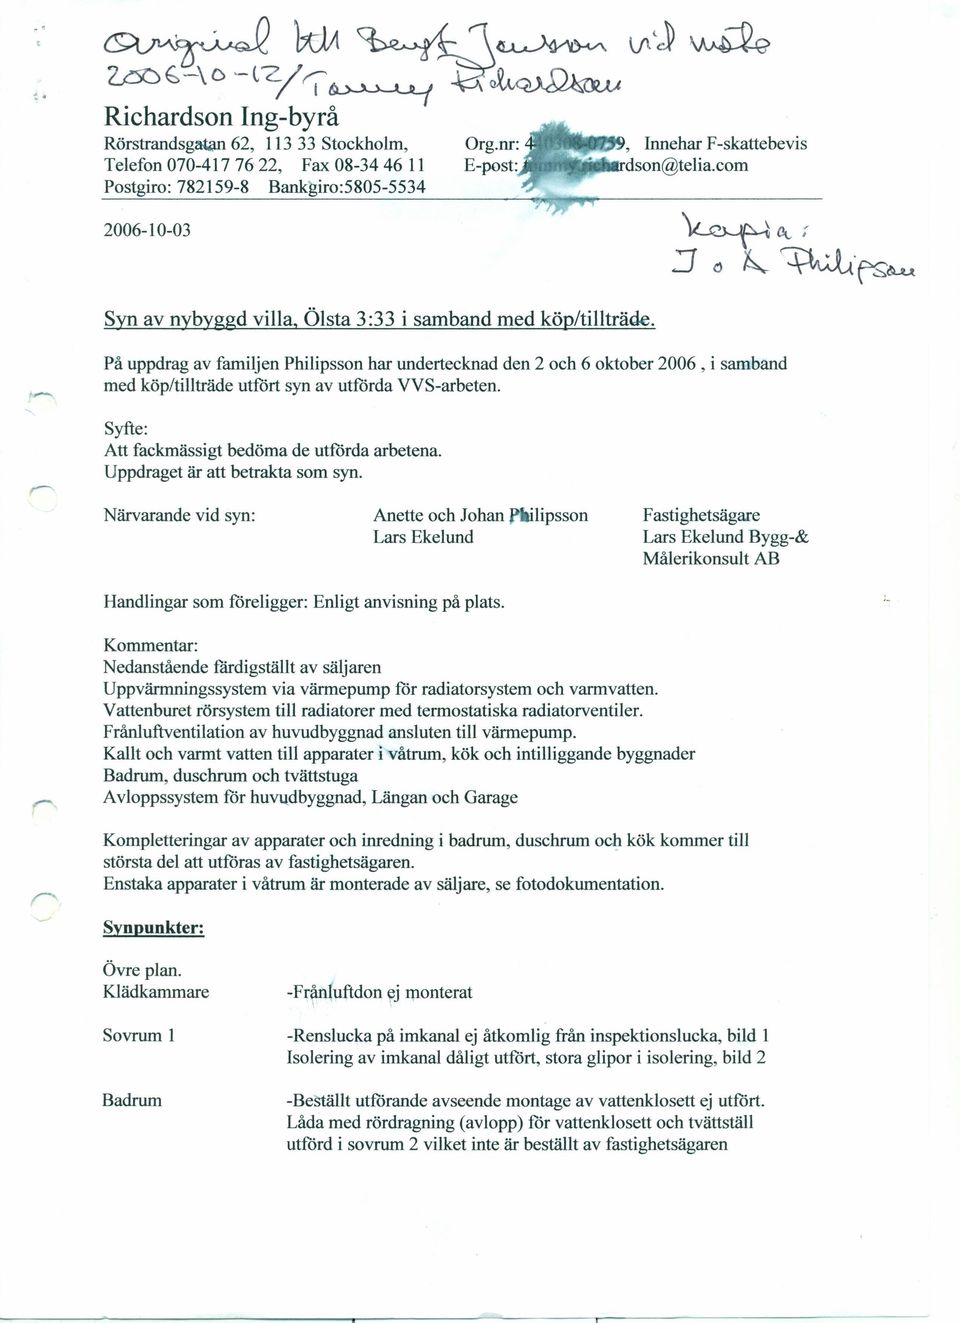 På uppdrag av familjen Philipsson har undertecknad med köp/tillträde utfört syn av utförda VVS-arbeten. den 2 och 6 oktober 2006, i samband Syfte: Att fackmässigt bedöma de utförda arbetena.